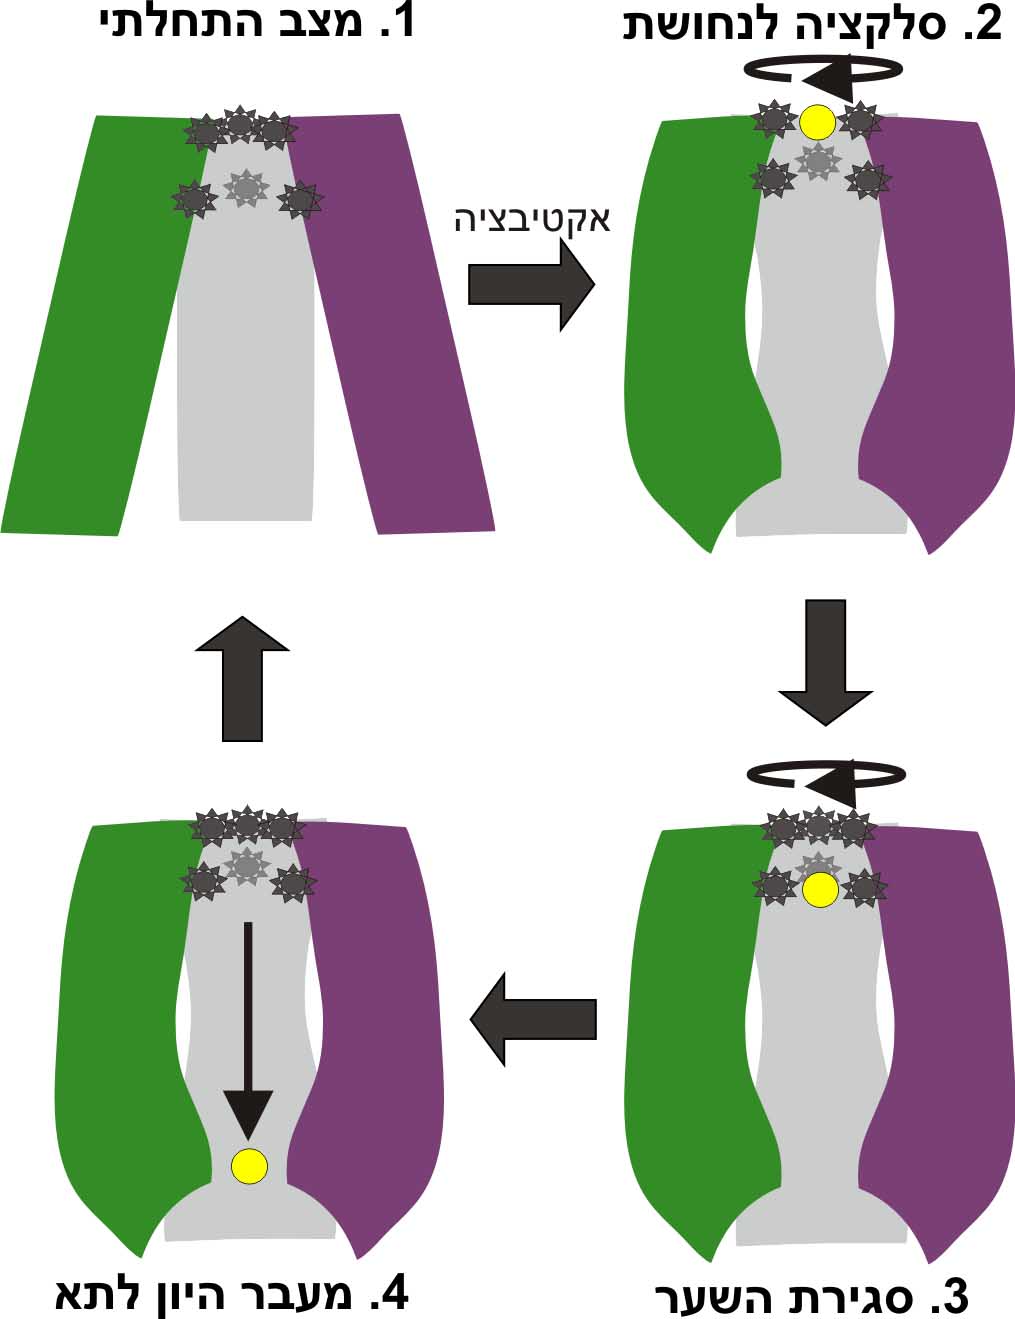 תמונה 2: באופן סכמטי את השלבים השונים של העברת יון הנחושת לתוך התא על ידי החלבון hCTR1. אלמנטים חיוניים ממוקמים בכניסה לתעלת ההולכה (כוכבים אפורים), ואחראים לסלקציה של יוני הנחושת (עיגול צהוב) על פני יונים וחומרים אחרים. לאחר שיון בודד עובר את הסלקציה, מבנה החלבון משתנה, הכניסה לתעלה נחסמת, ויונים נוספים לא יכולים להיכנס. היון שעבר נכנס לתא, וחוזר חלילה. . קרדיט: מאיה שושן